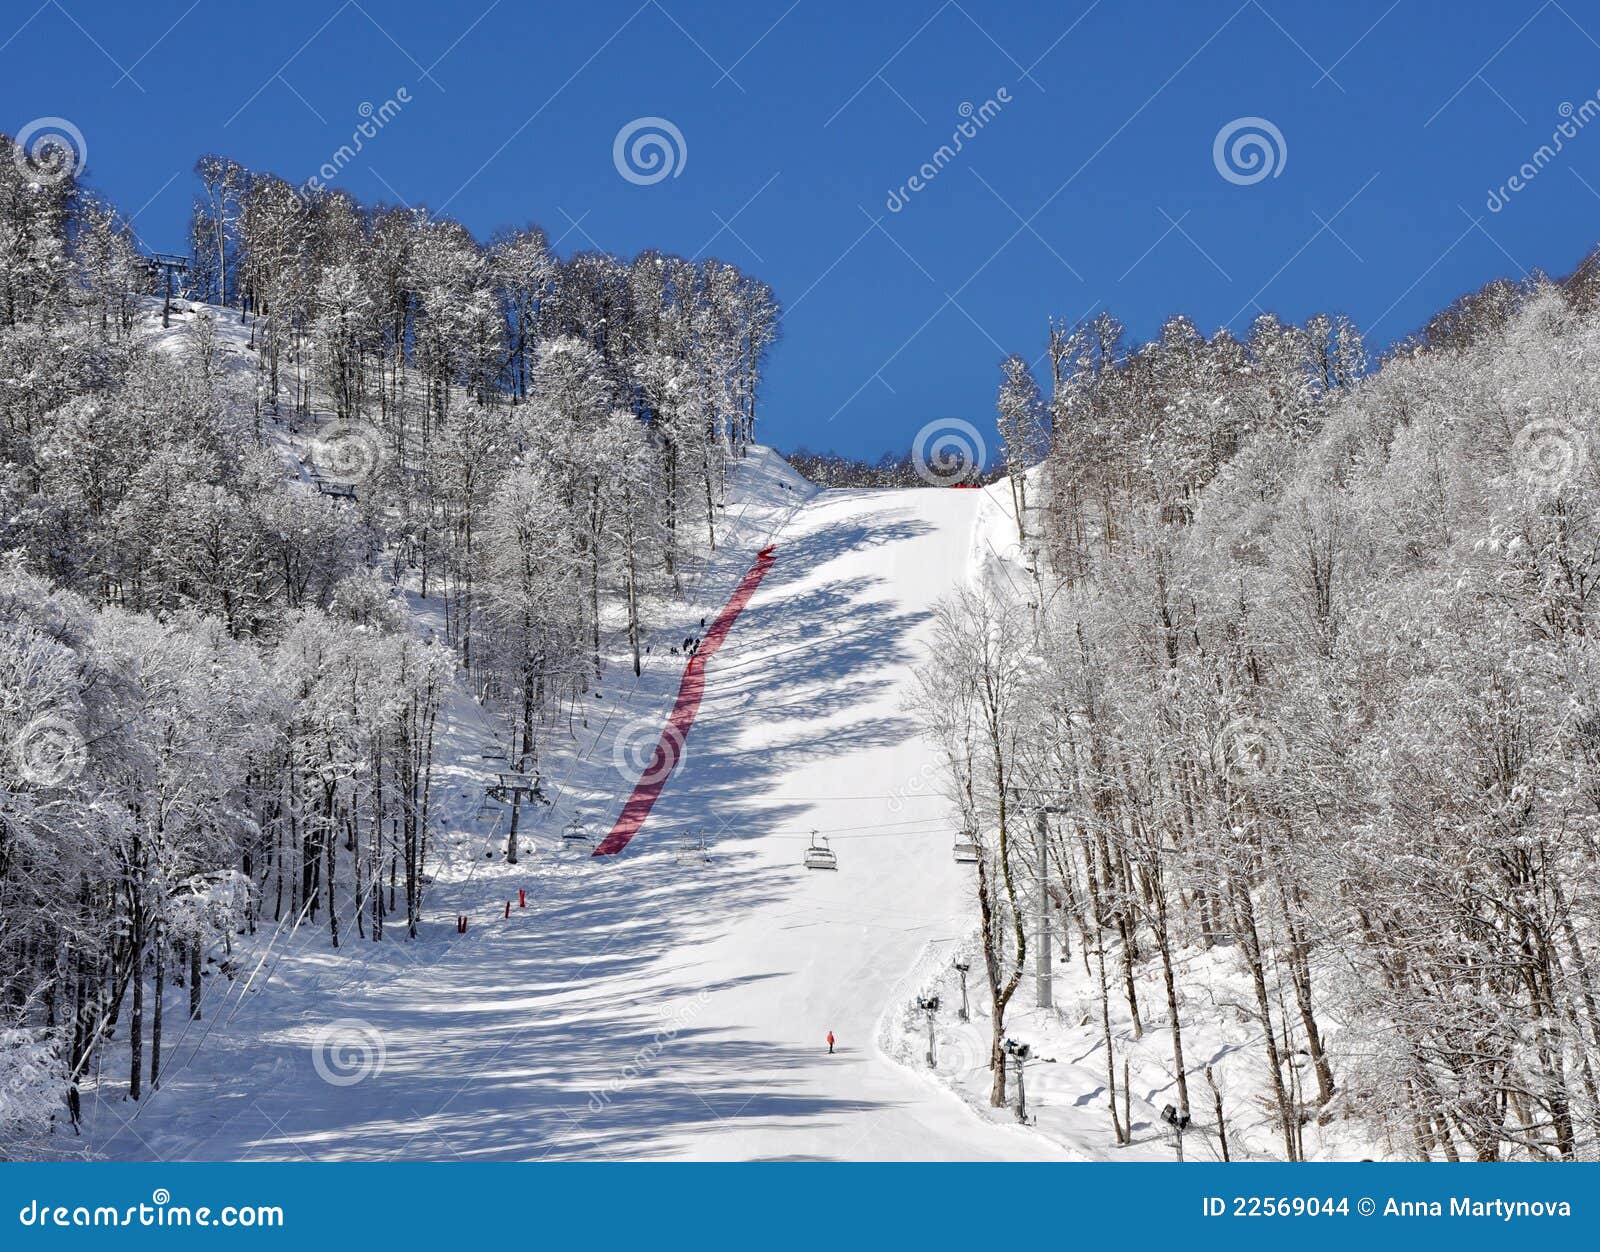 ski mounting